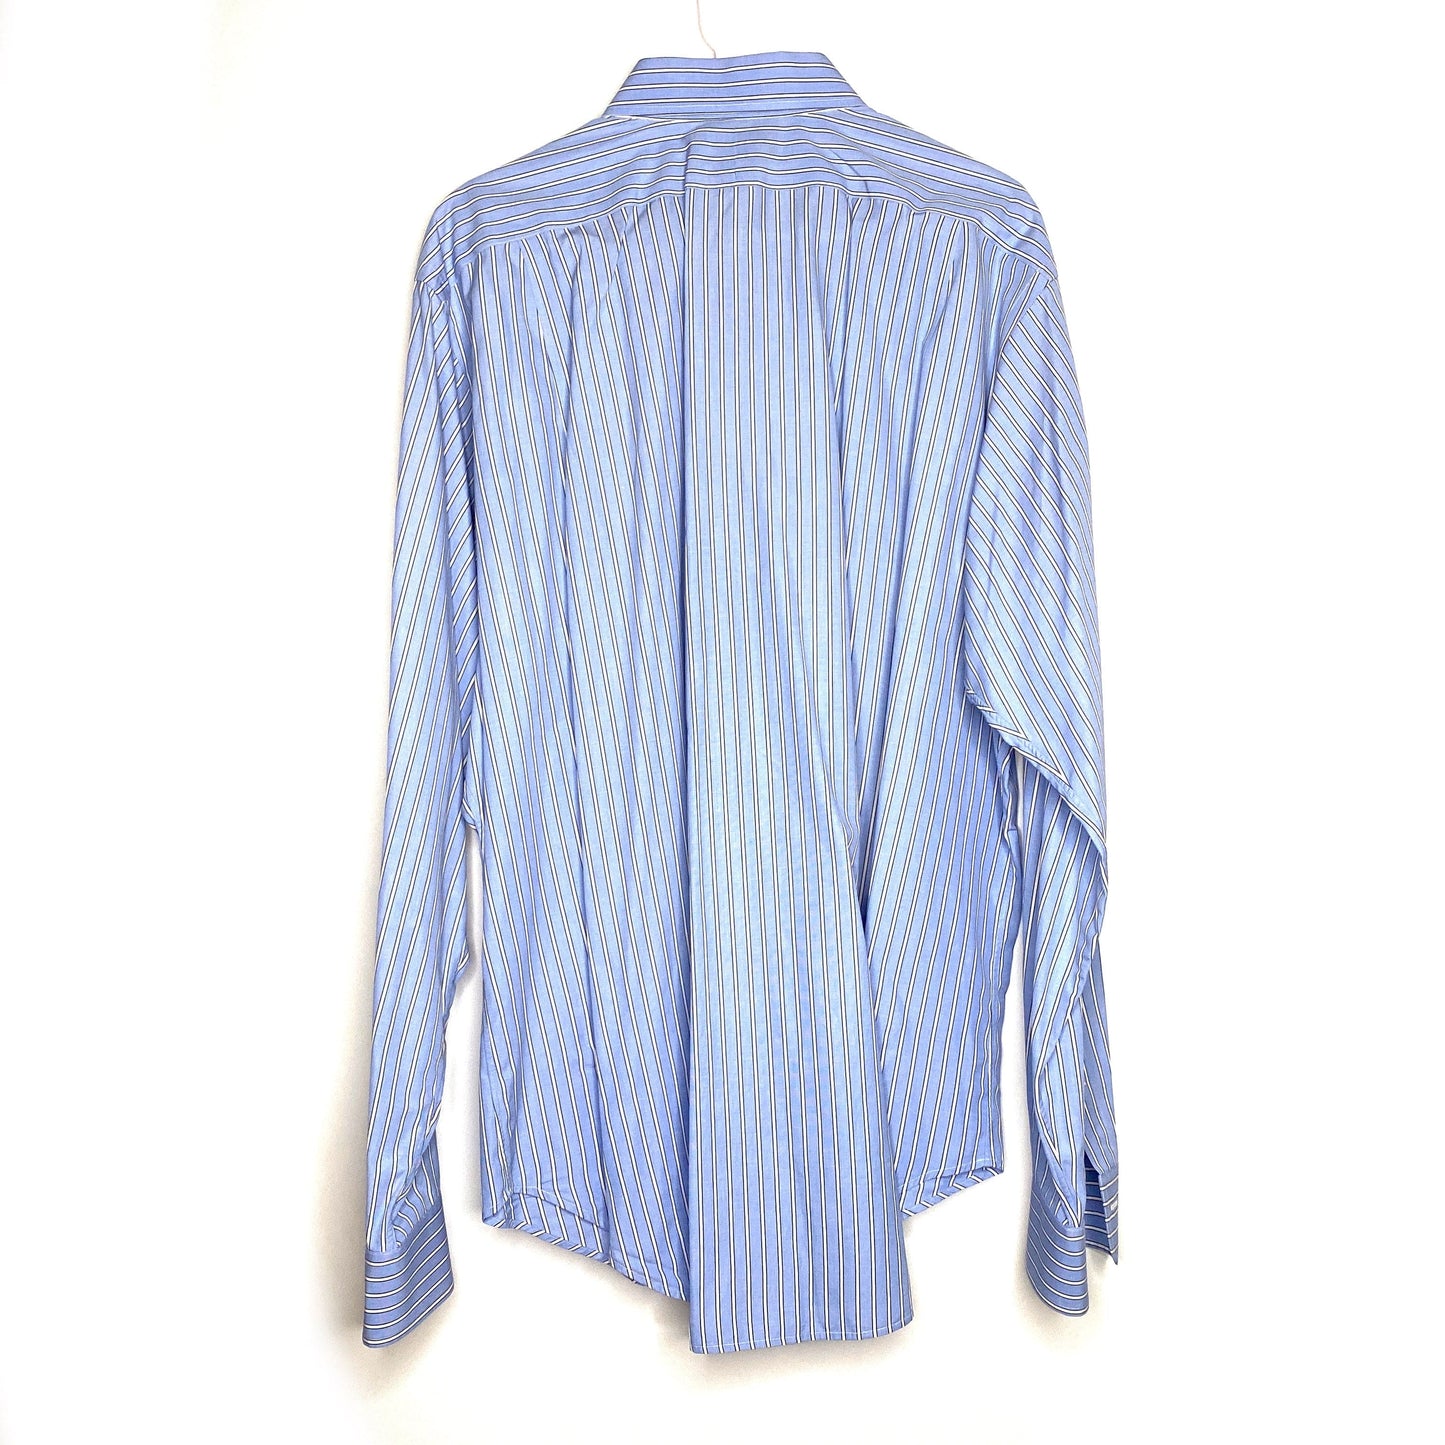 Polo by Ralph Lauren Mens Size XL Blue White Striped Dress Shirt Regent Classic Fit Button-Up L/s